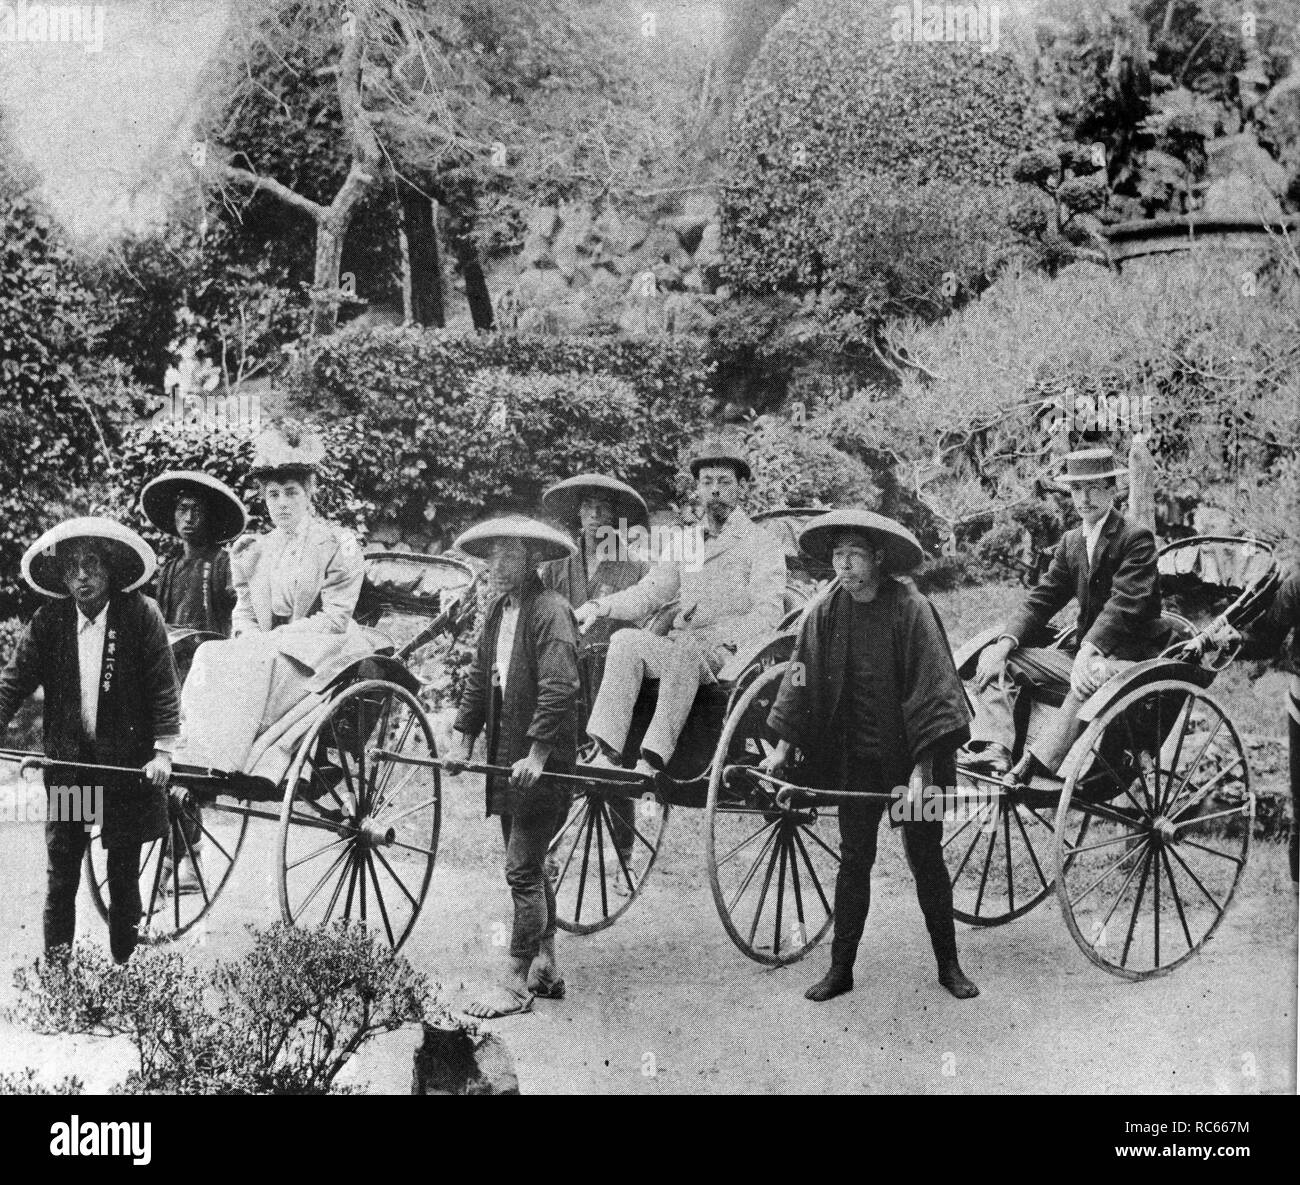 Le père de Winston Churchill, Lord Randolph Churchill et sa mère, Lady Churchill, voyagent dans des rickshaws au Japon. Banque D'Images